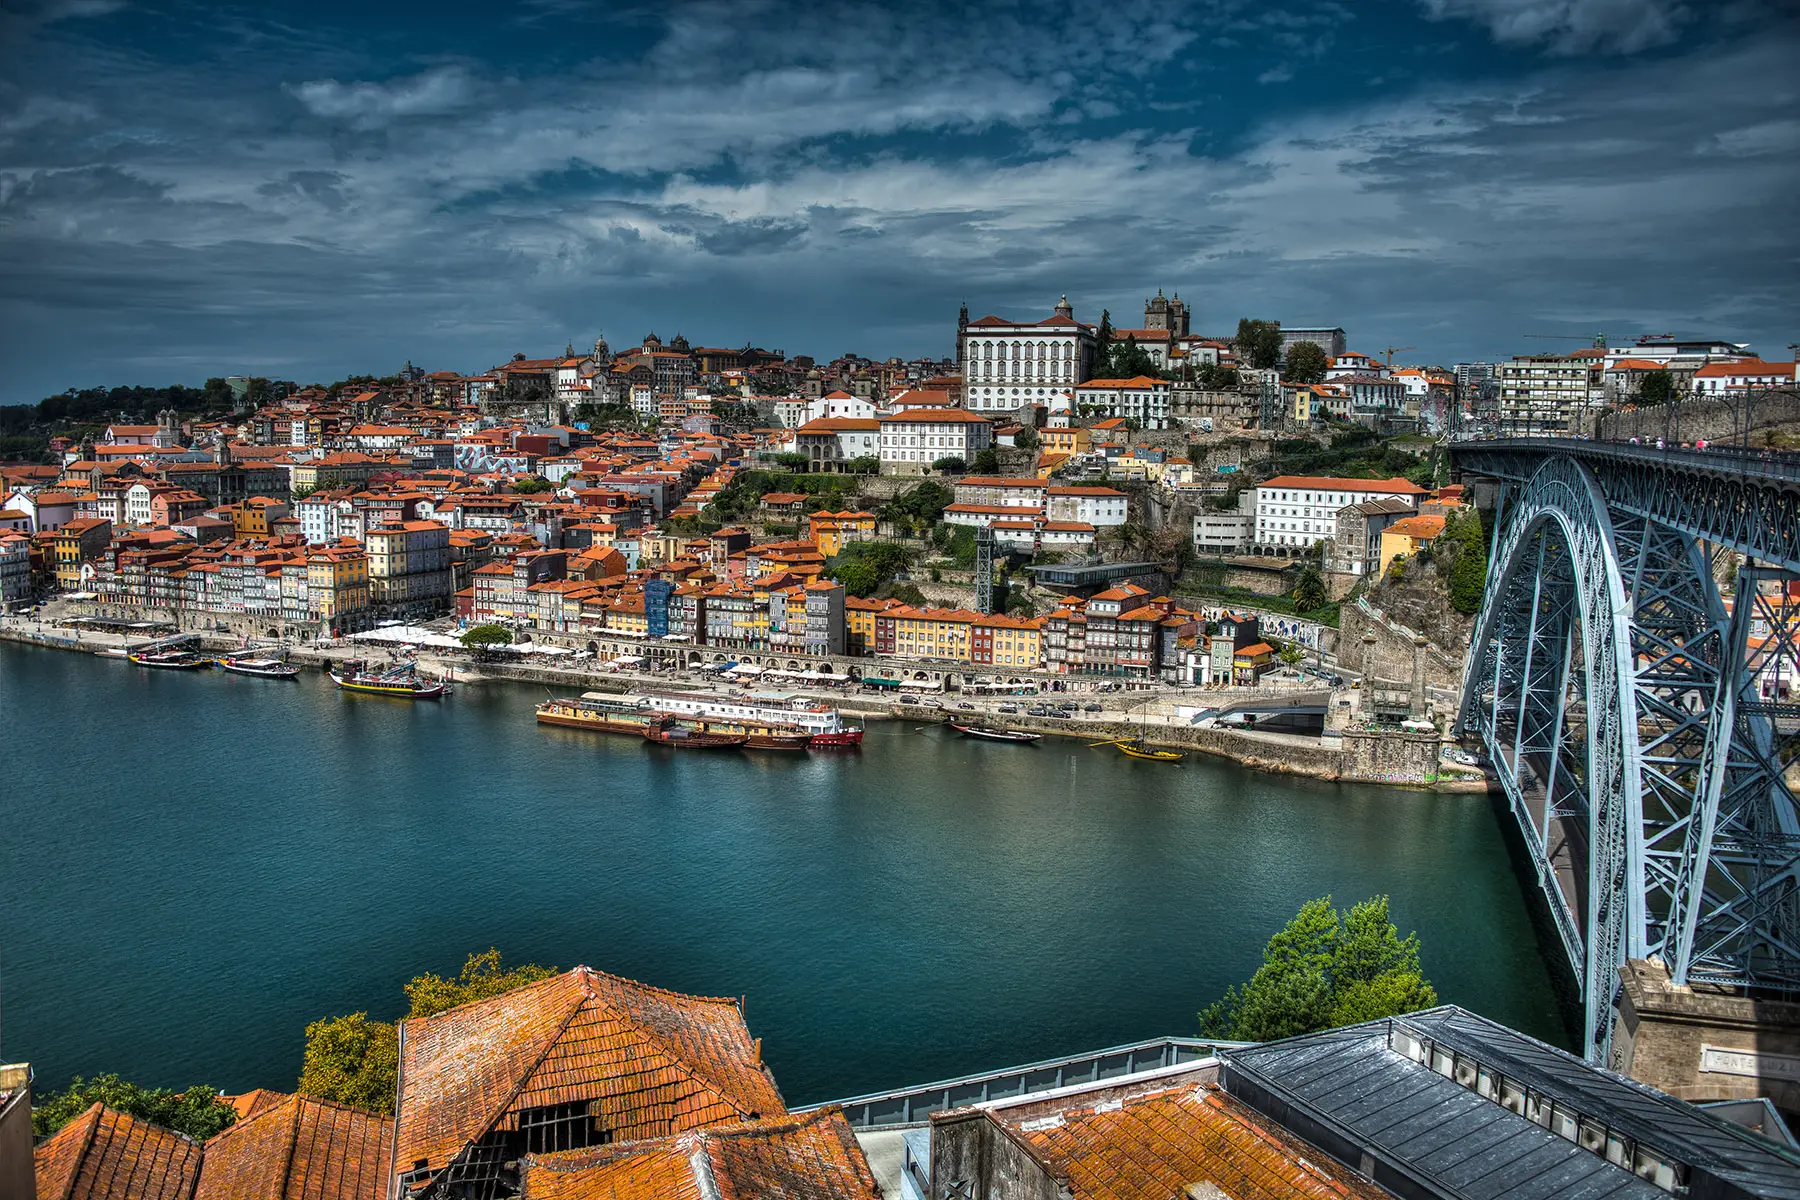 The skyline of Porto